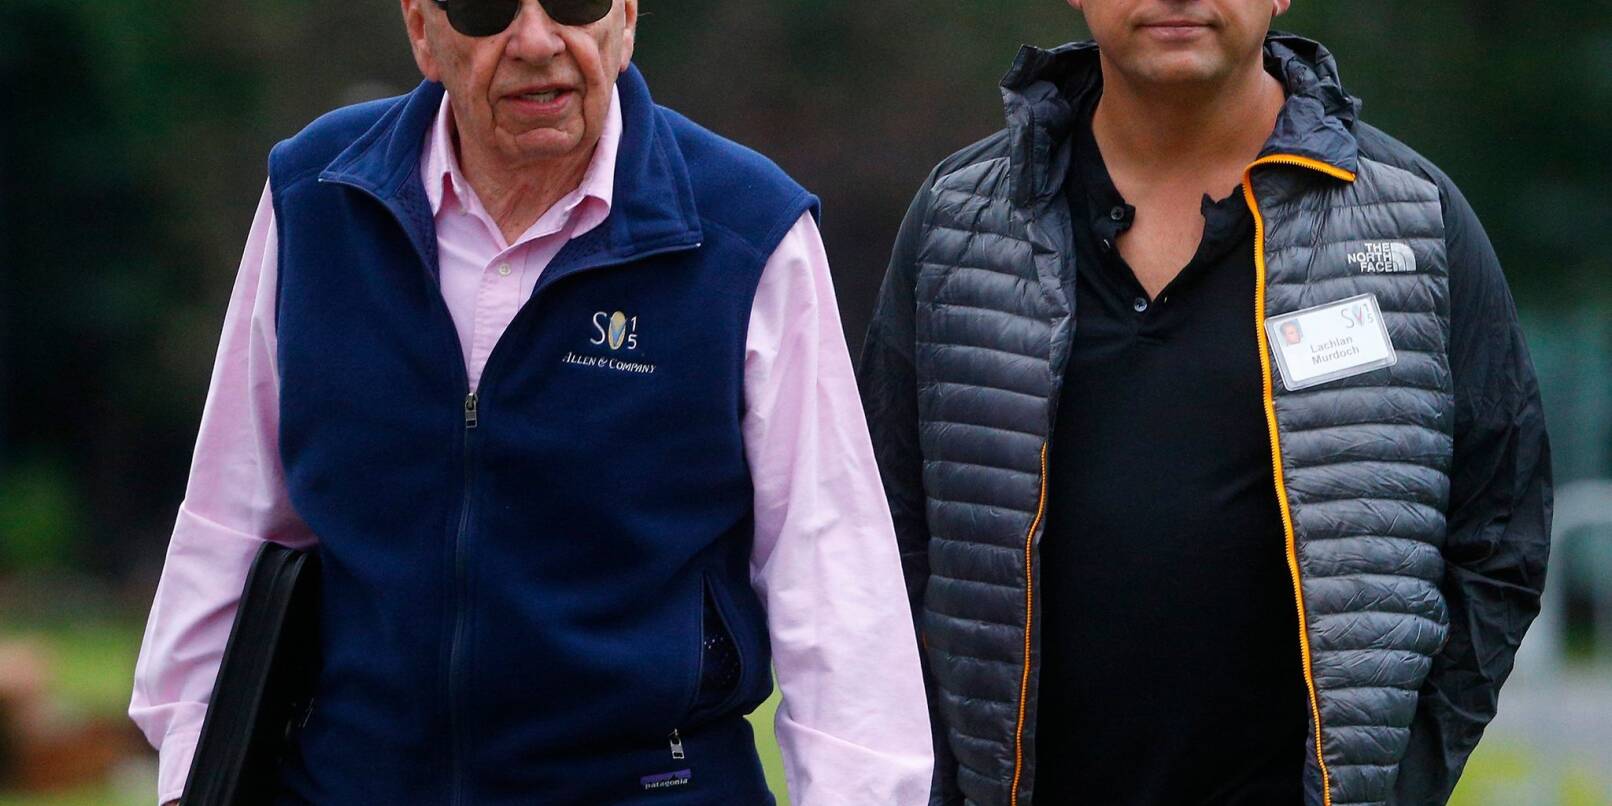 Medienunternehmer Rupert Murdoch (l) und sein Sohn Lachlan, aufgenommen vor einer Konferenz im US-Bundesstaat Idaho.